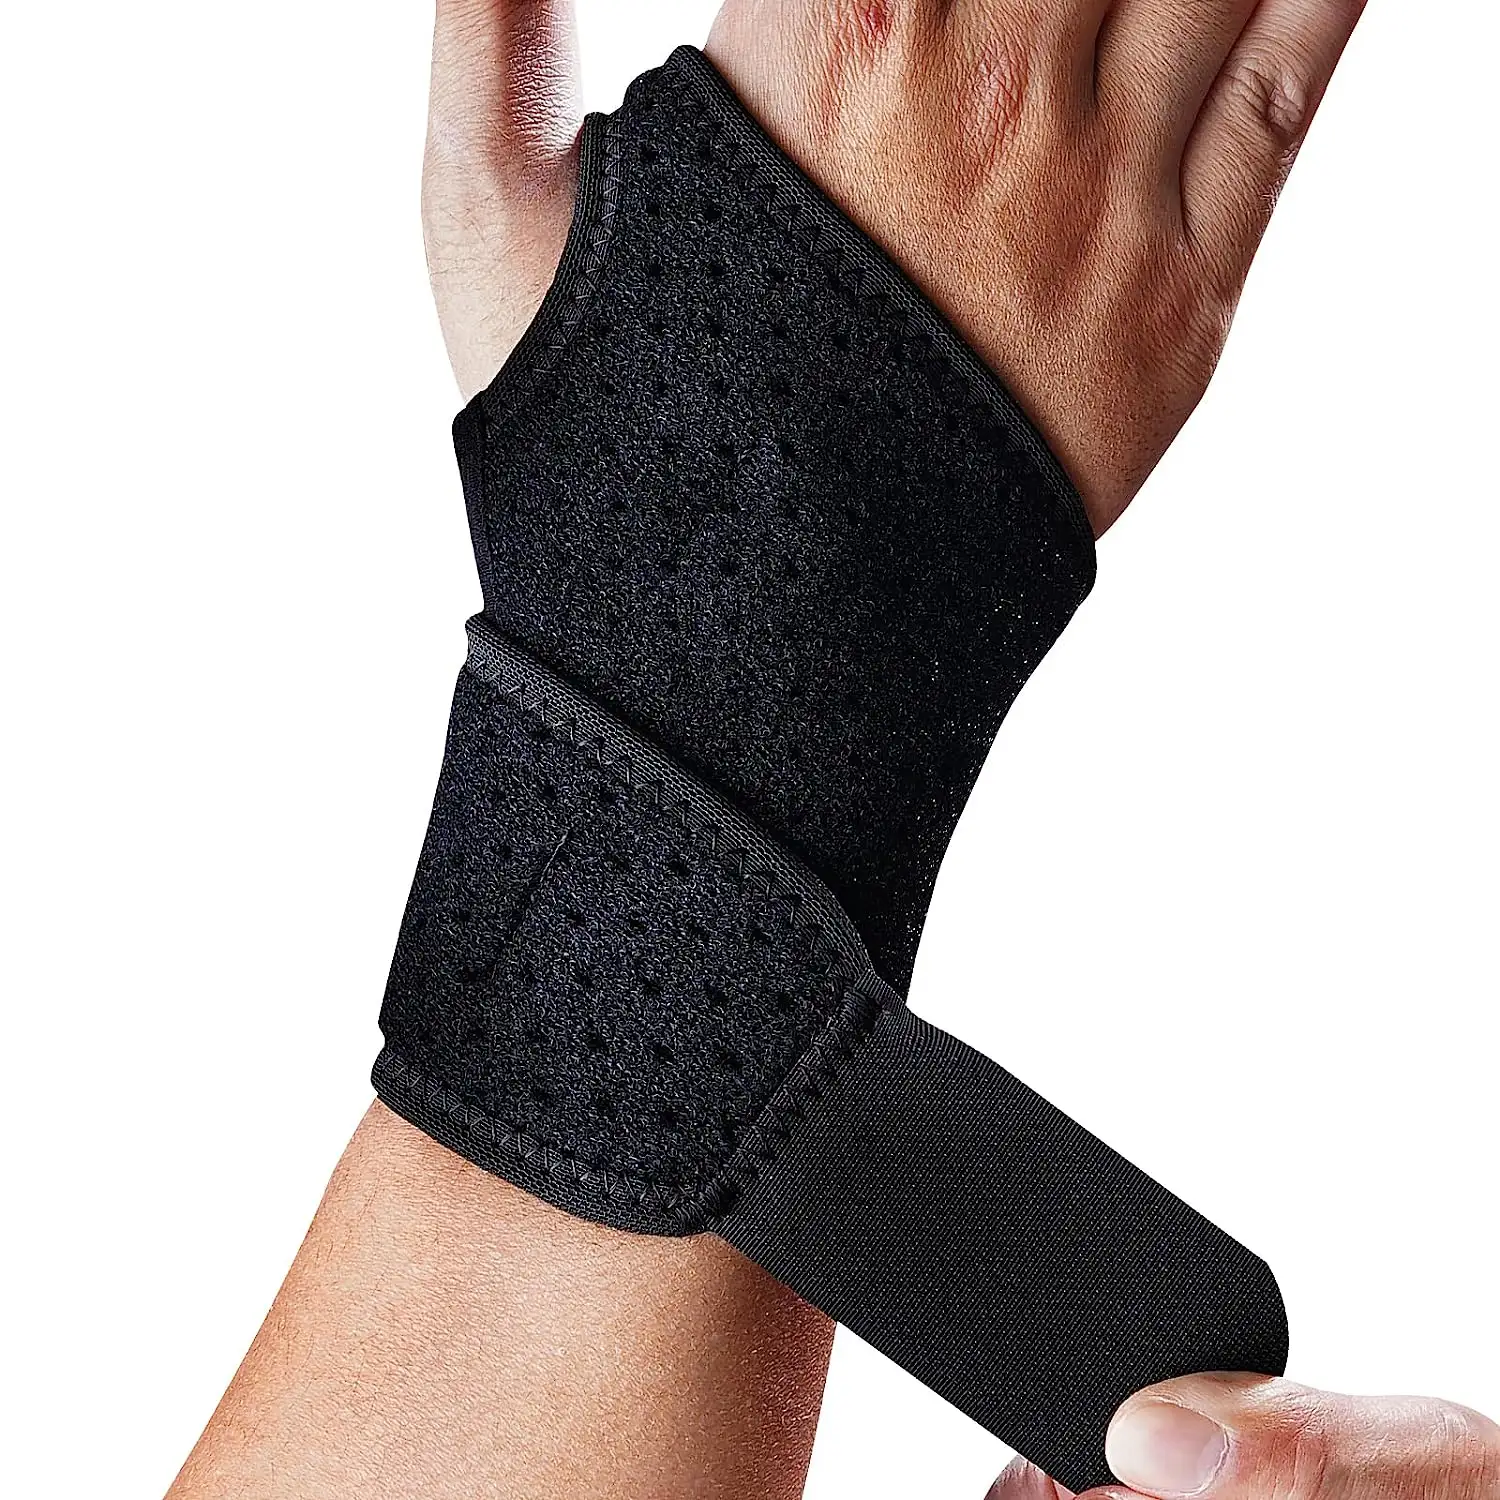 Bác sĩ phát triển cao cấp Neoprene cổ tay hỗ trợ cổ tay cú đúp, dây đeo cổ tay hỗ trợ tay thích hợp cho cả hai tay